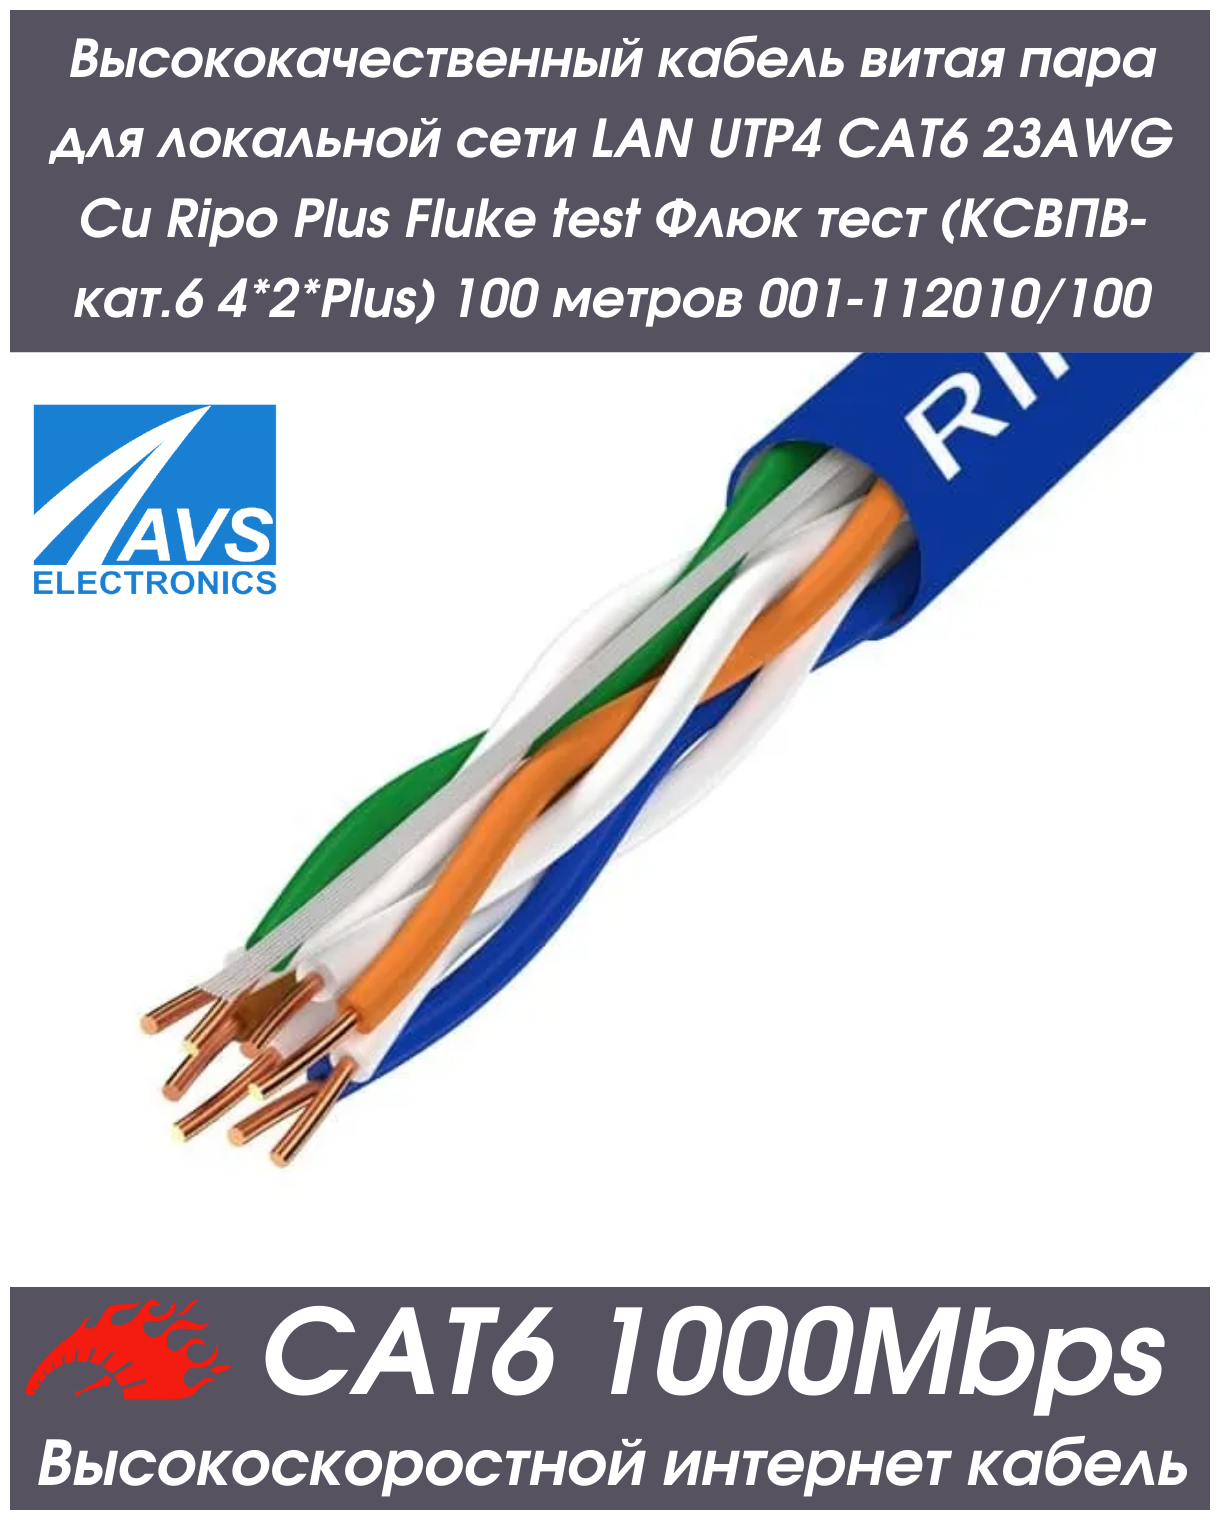 Высококачественный кабель витая пара для локальной сети LAN UTP4 CAT6 23AWG Cu Plus Fluke test (ксвпв-кат.6 4*2*Plus) 100 метров 001-112010/100 — купить в интернет-магазине по низкой цене на Яндекс Маркете